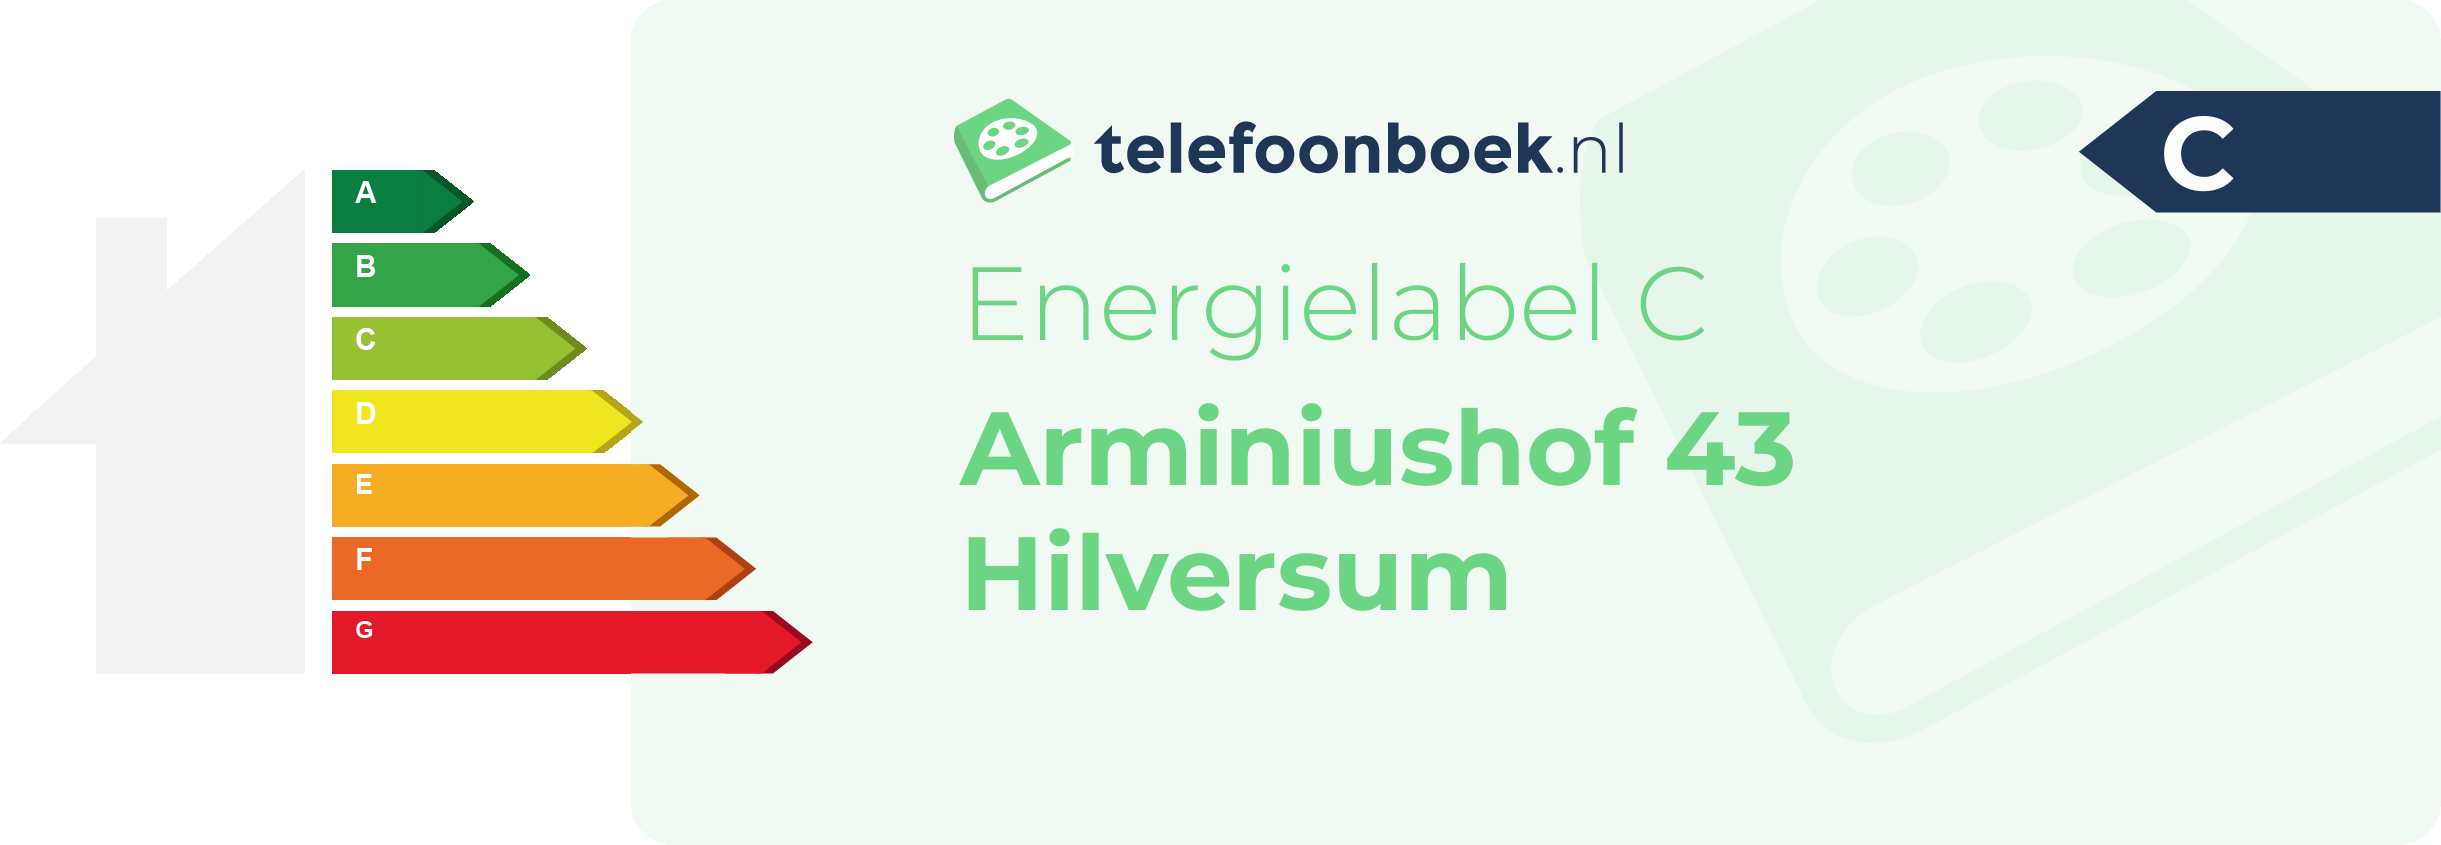 Energielabel Arminiushof 43 Hilversum